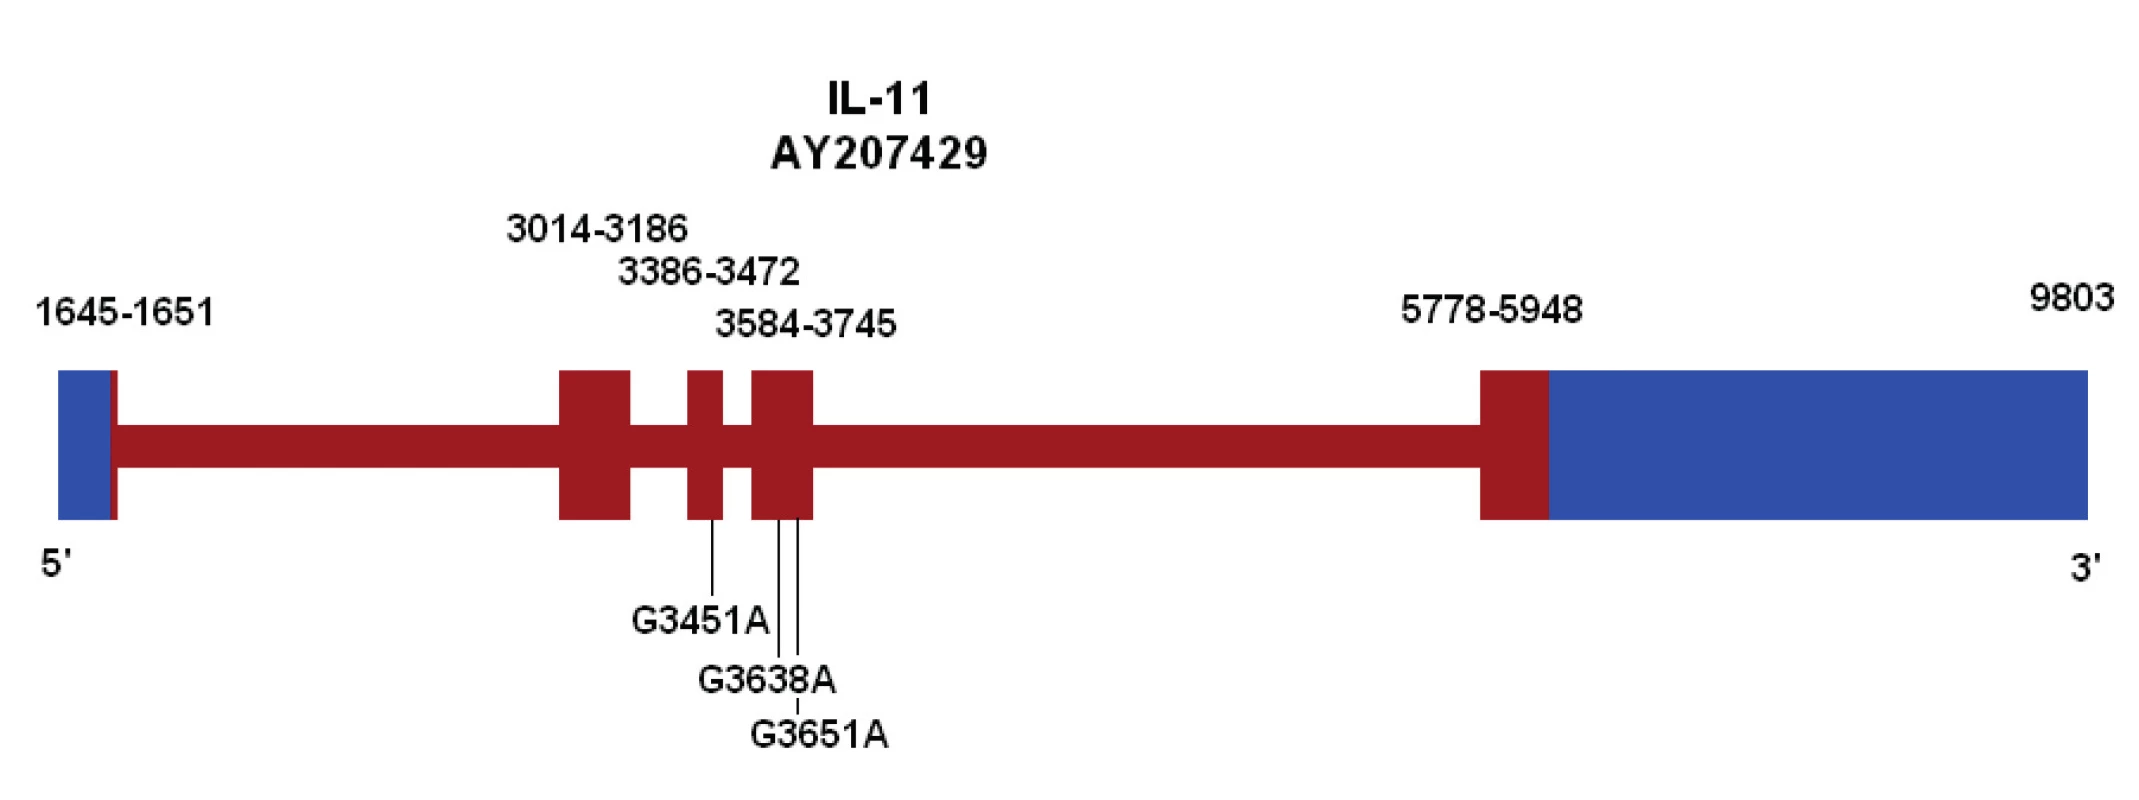 Ideogram genu pro IL-11 s vyznačením variant v exonech